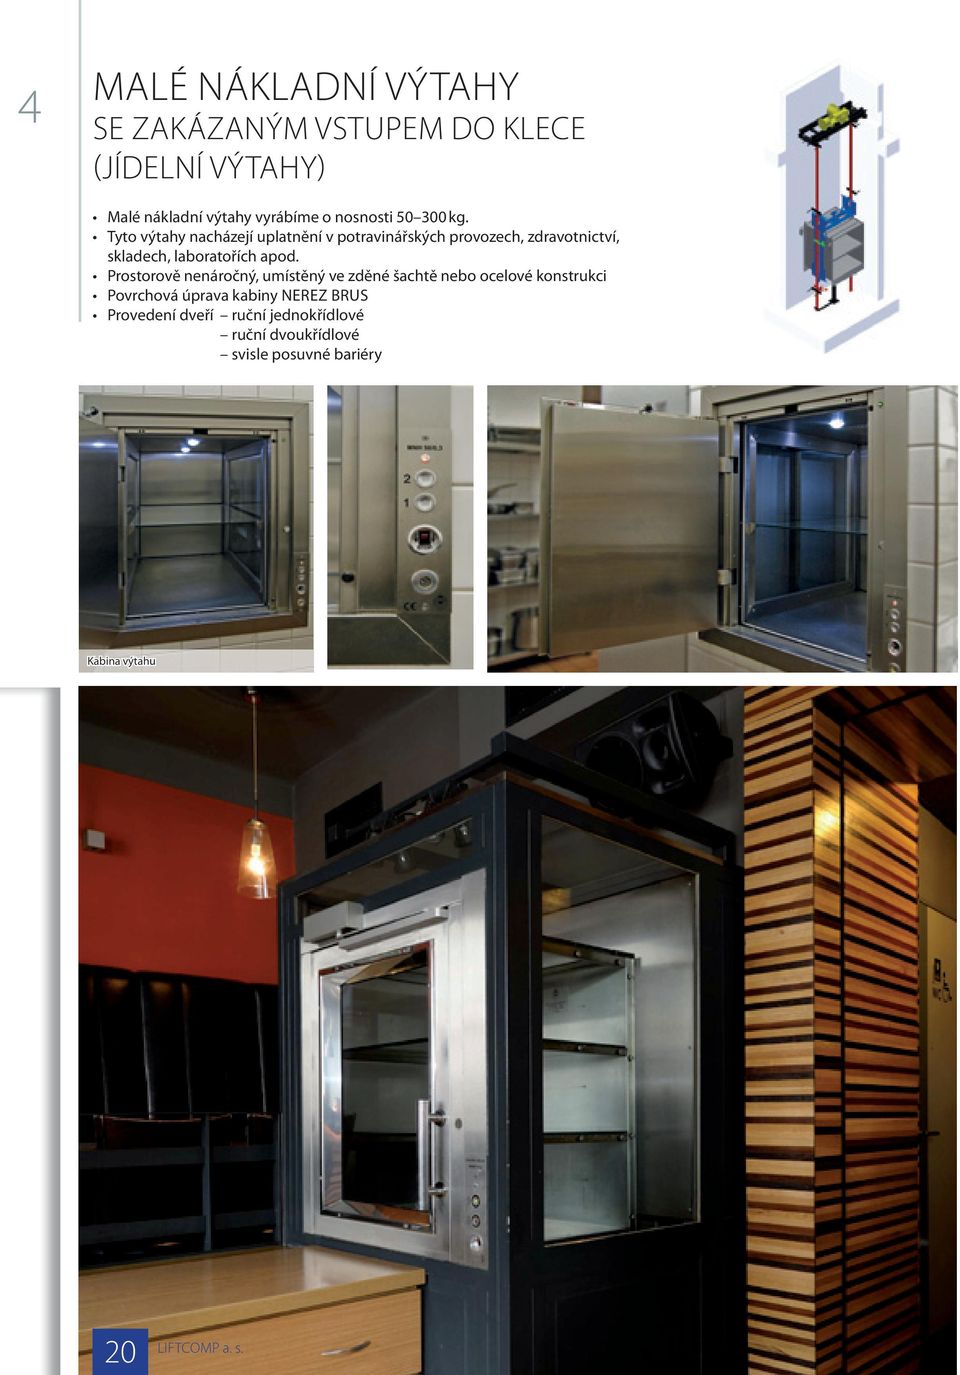 Tyto výtahy nacházejí uplatnění v potravinářských provozech, zdravotnictví, skladech, laboratořích apod.